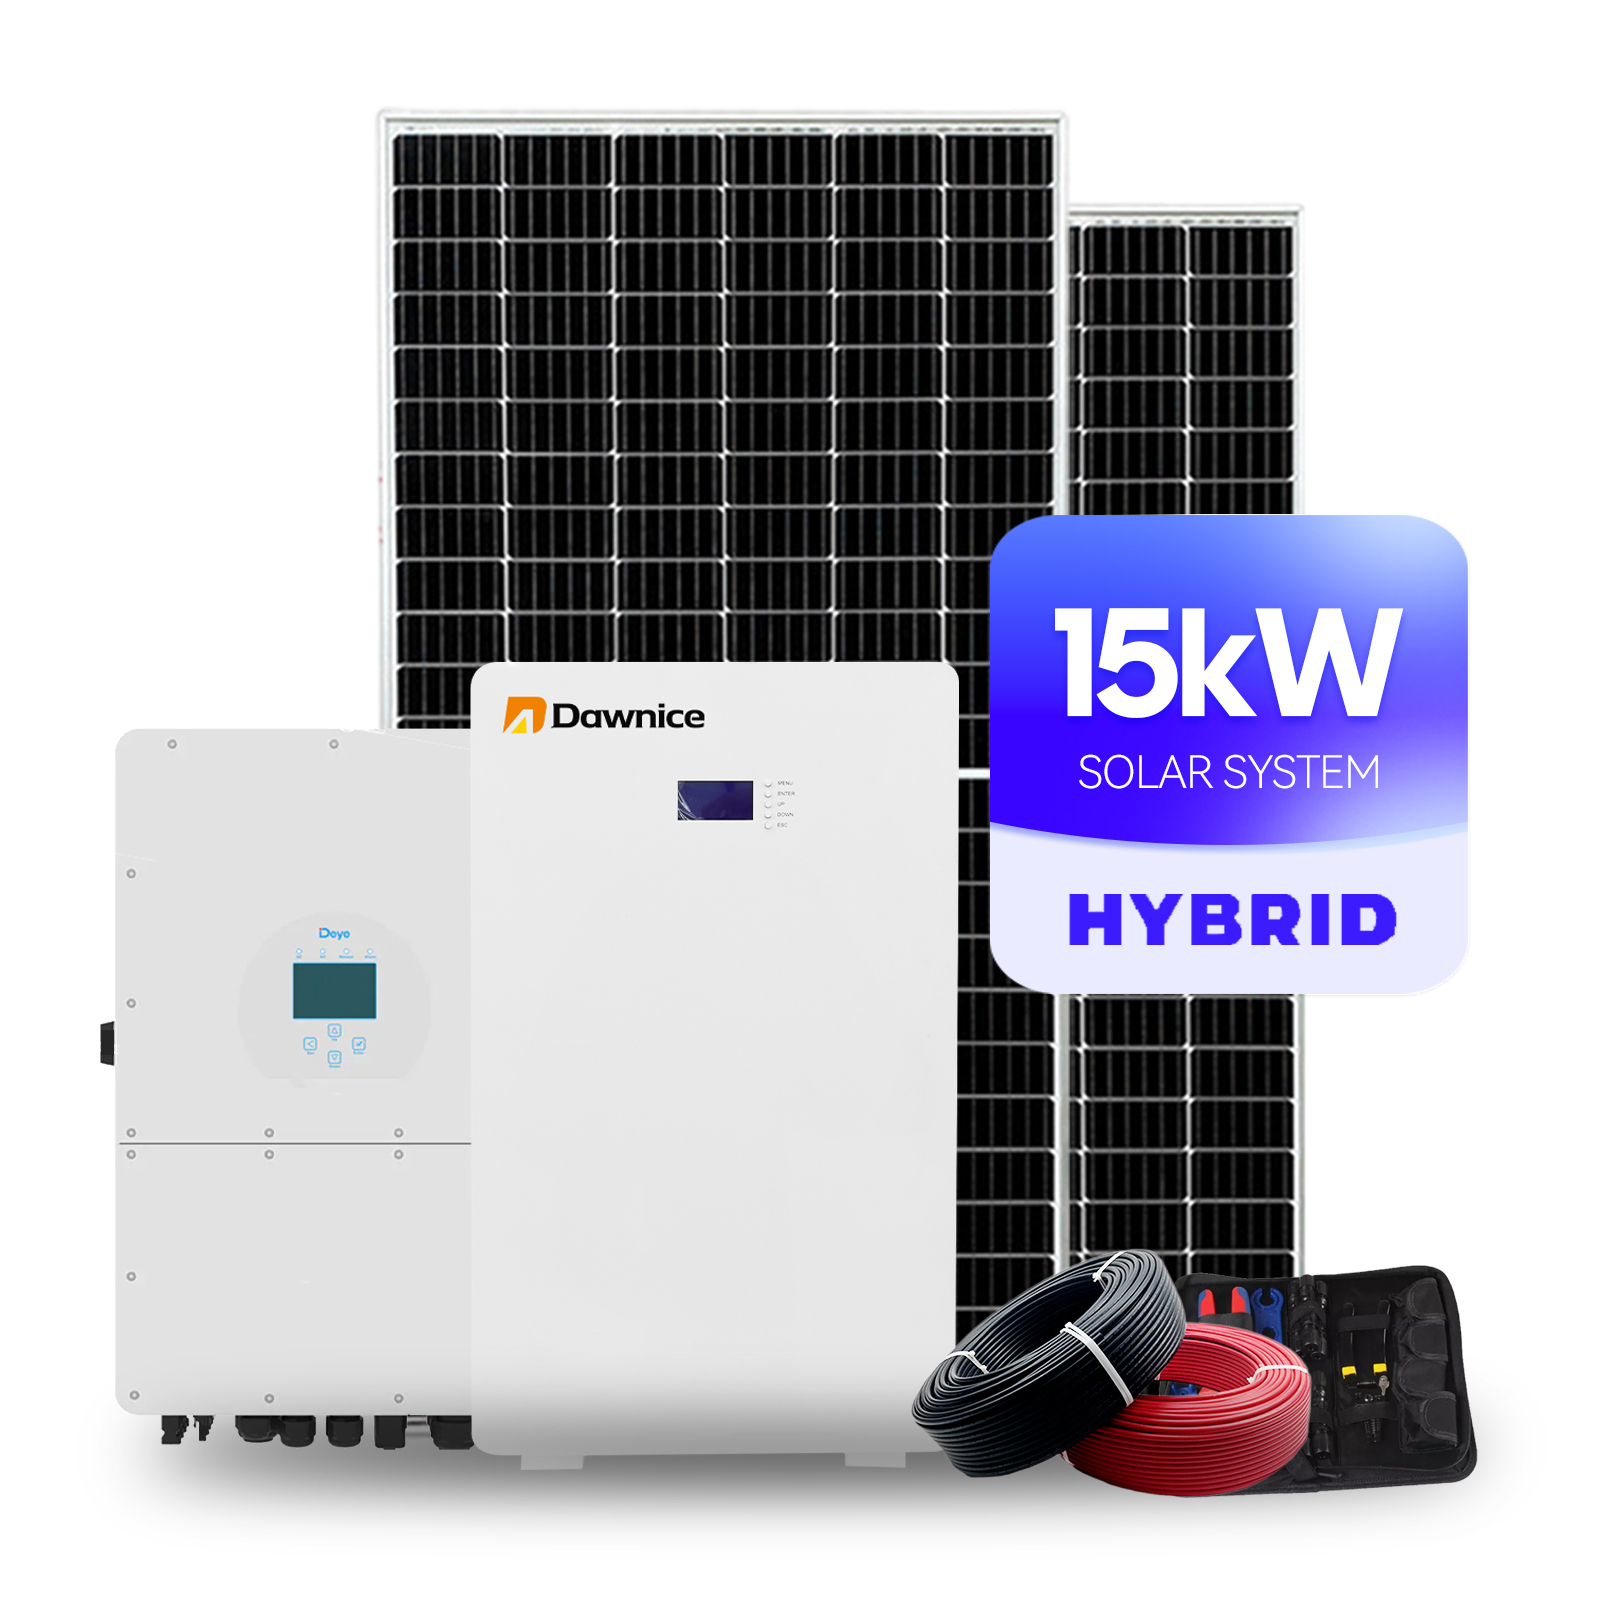 15kw hybrid solar system